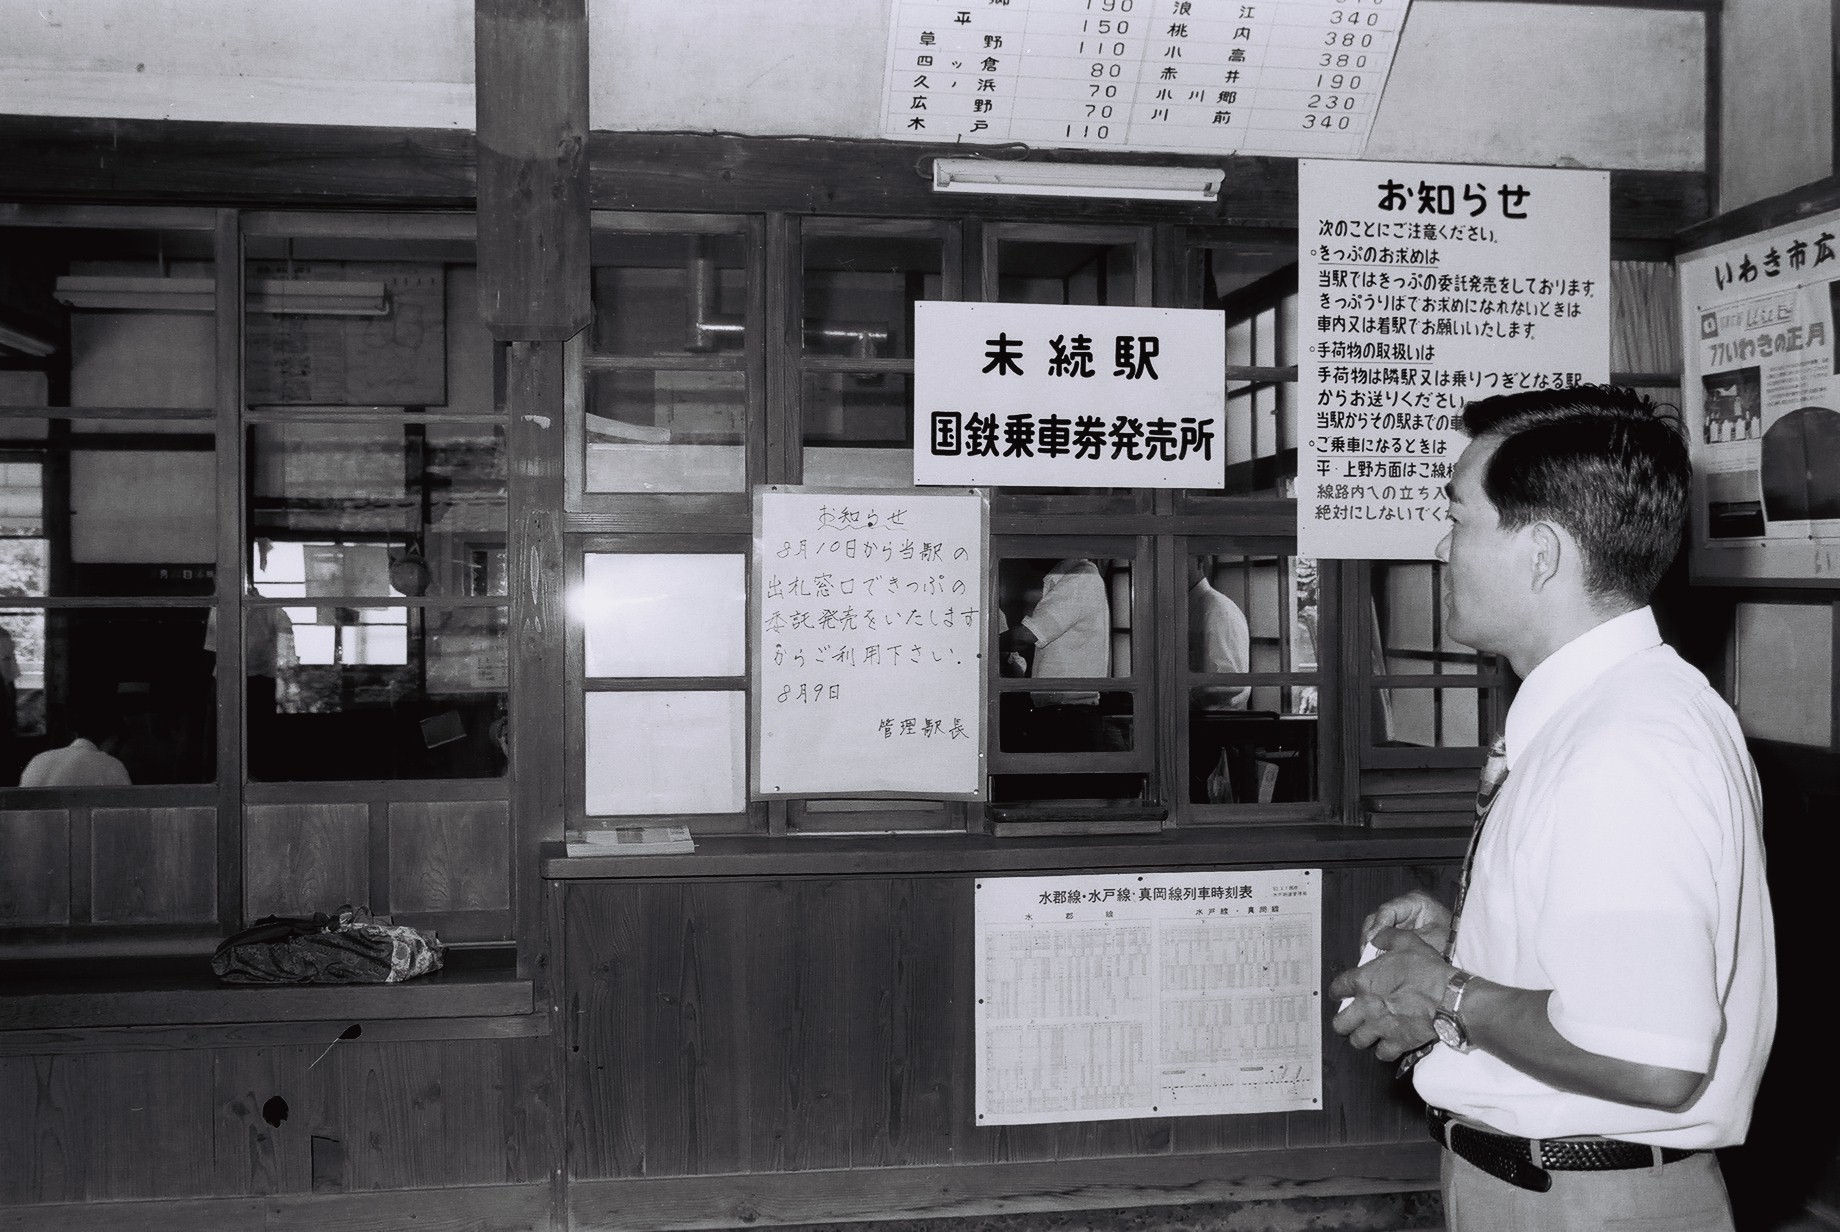 末続駅切符販売(昭和52年7月、いわき市撮影)